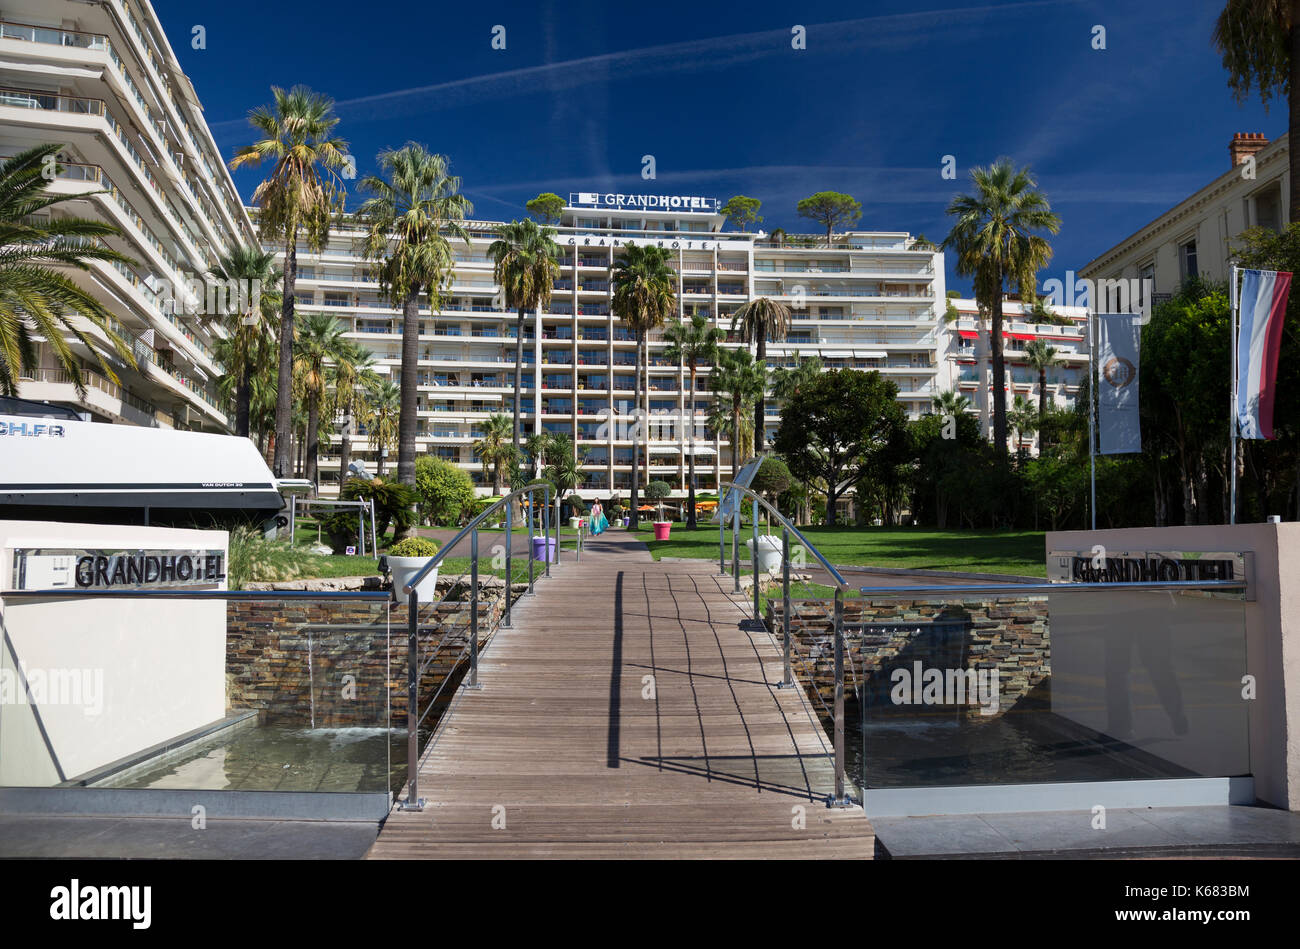 Le Grand Hotel, Boulevard de la Croisette, Cannes, France Banque D'Images